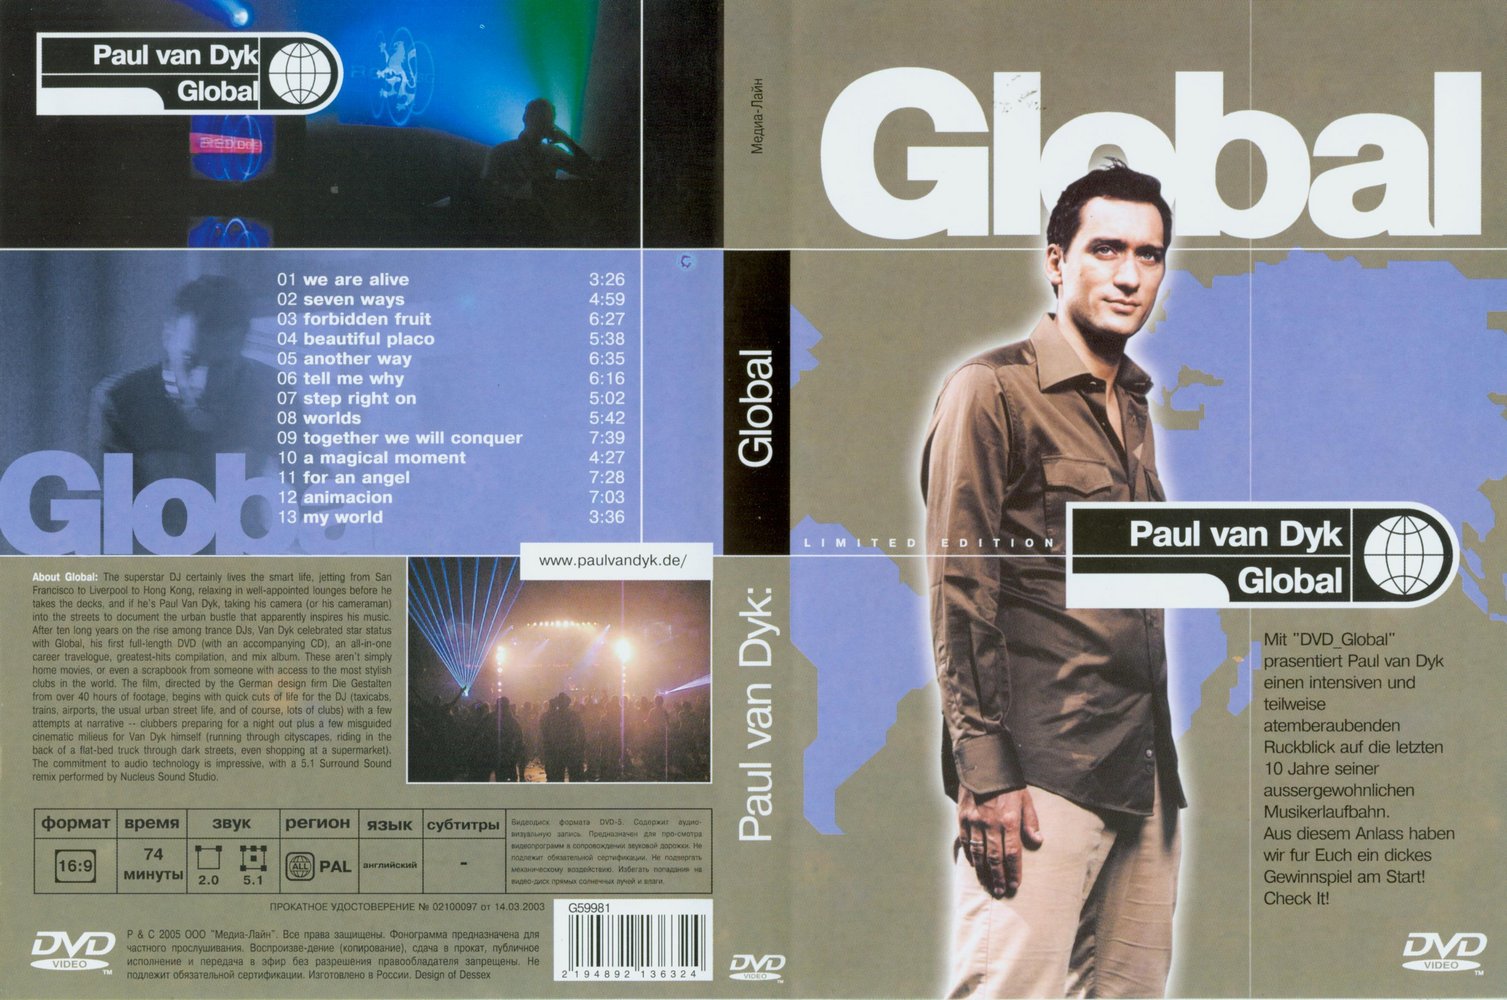 Jaquette DVD Paul Van Dyk - Global